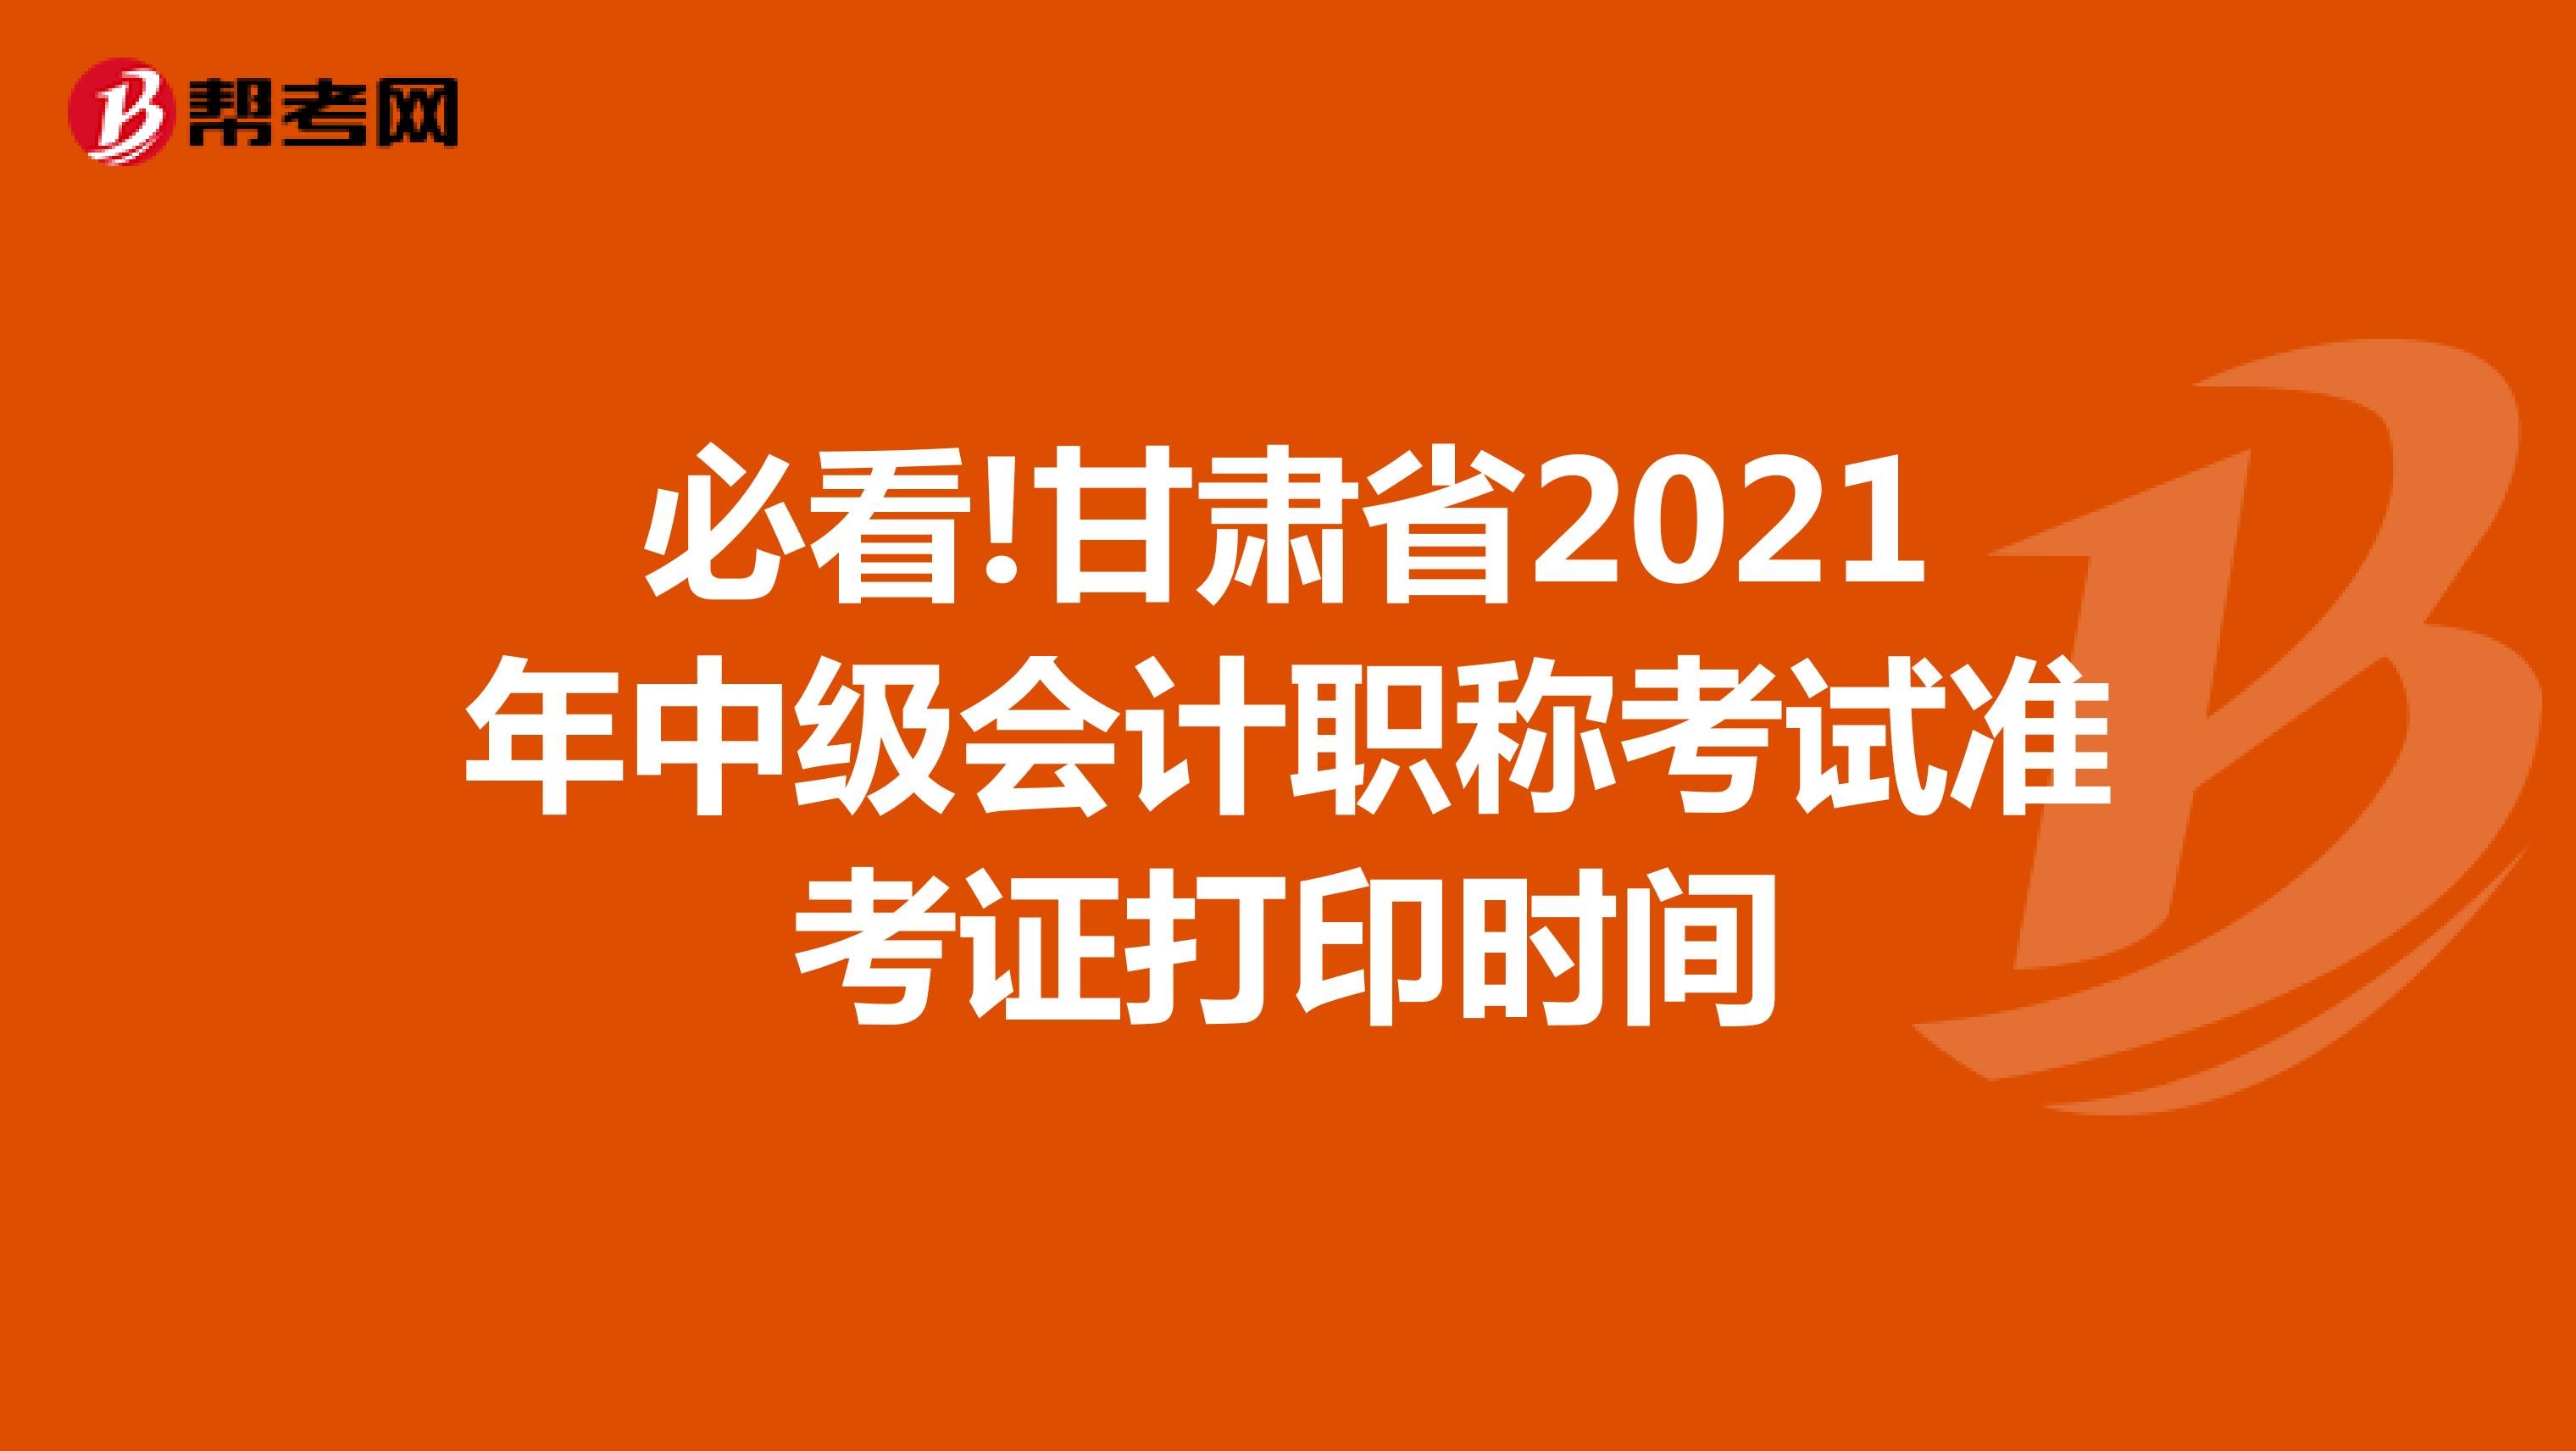 必看!甘肃省2021年中级会计职称考试准考证打印时间